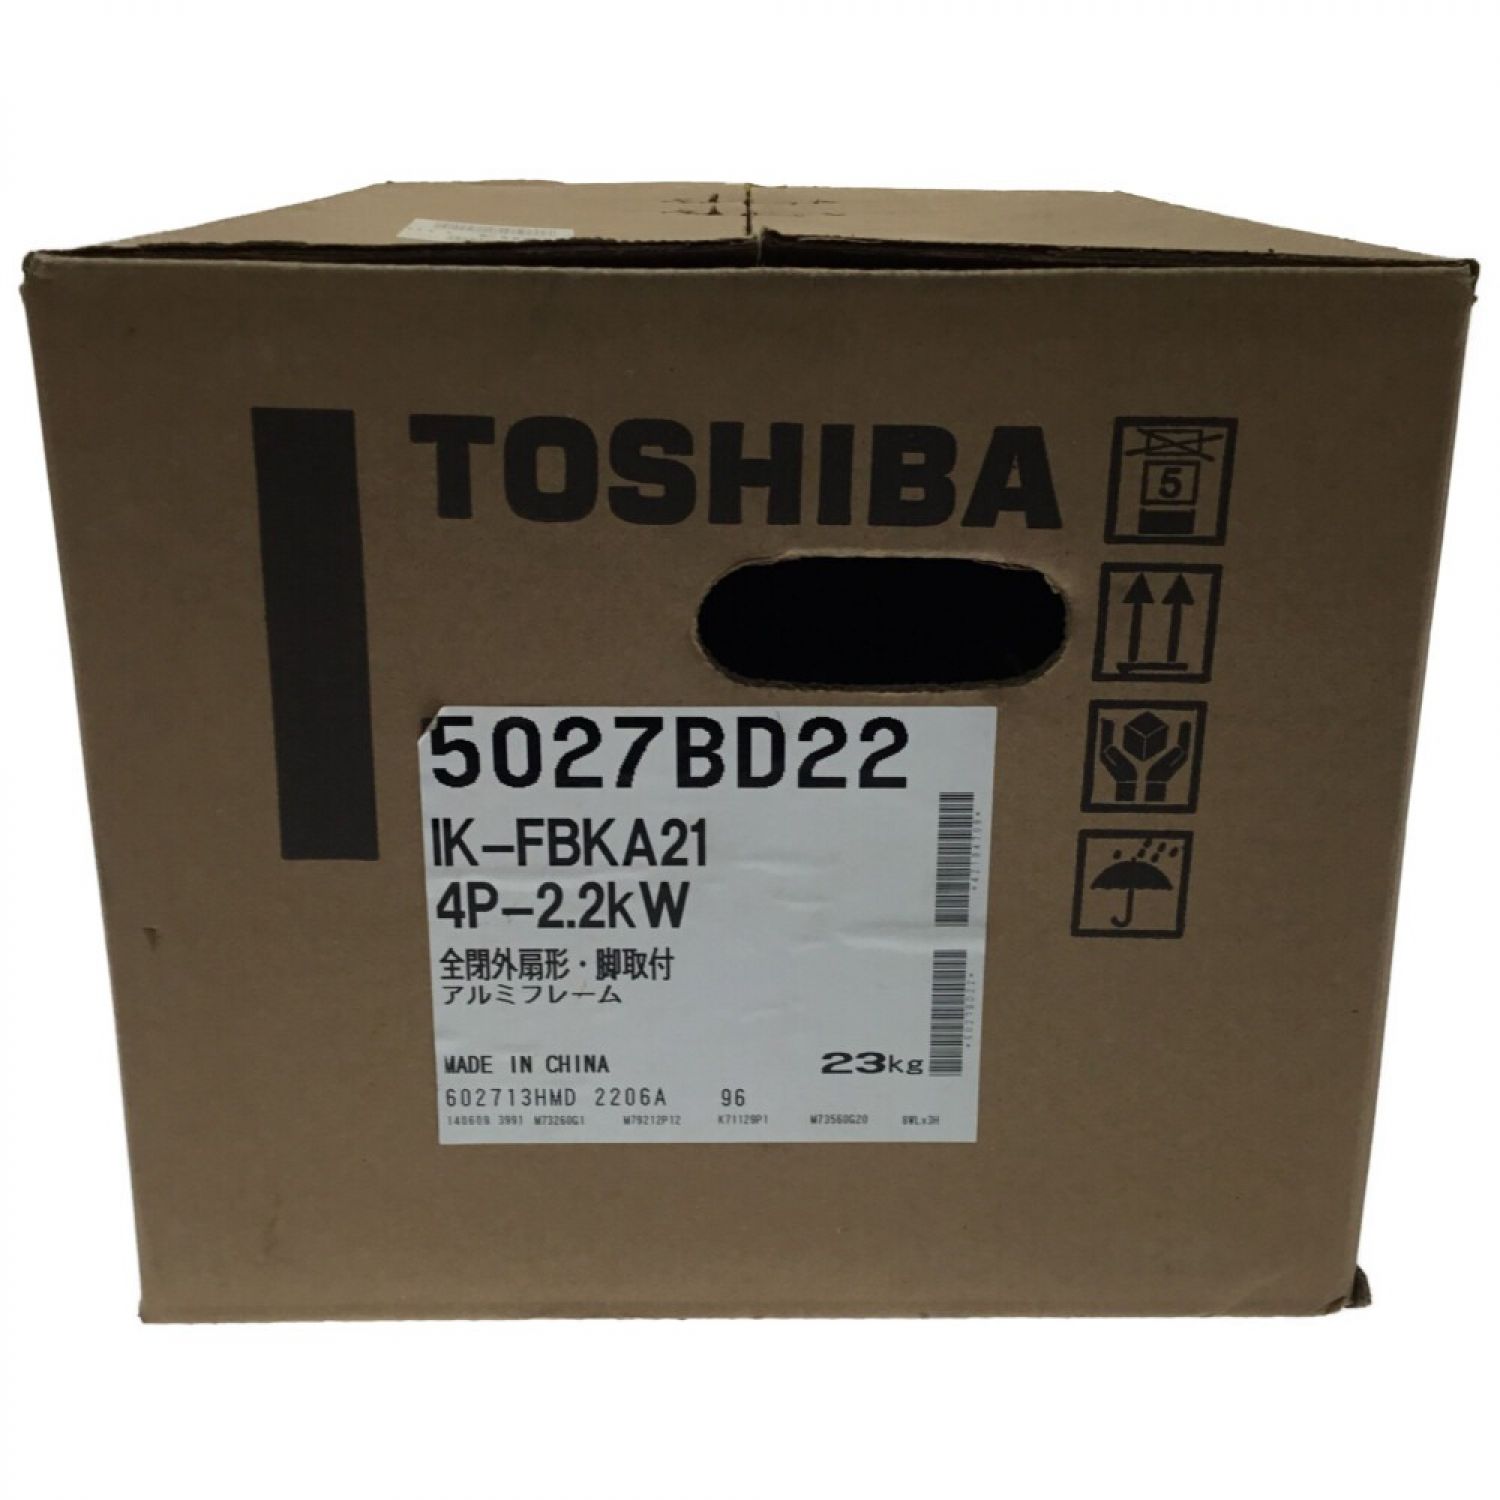 ΘΘTOSHIBA 東芝 モーター 未使用品 三相200V脚取付全閉外扇形 IK-FBKA21 4P-2.2kW グレー